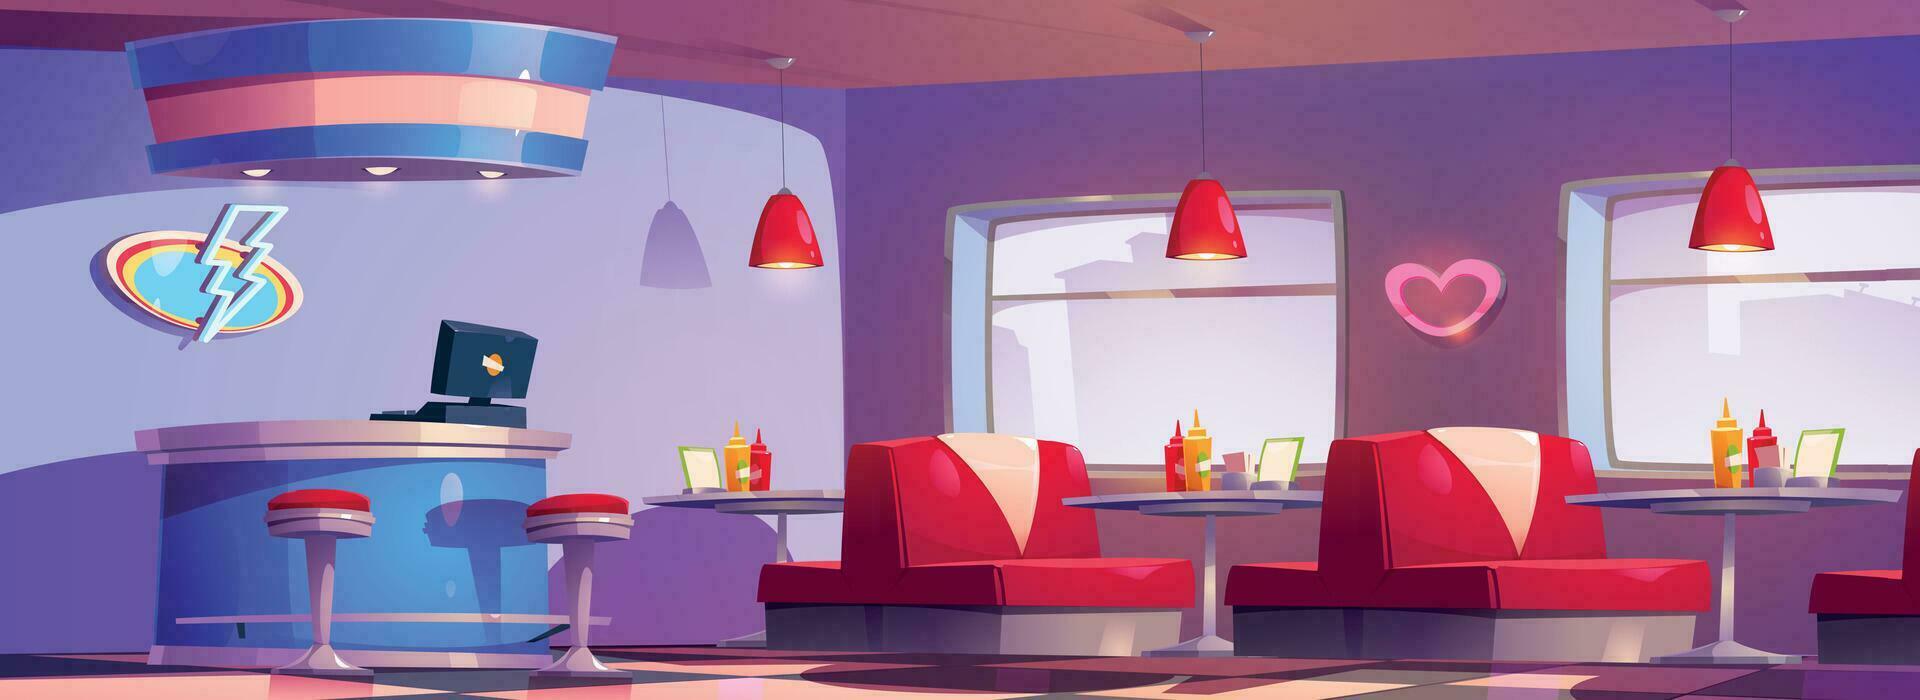 amerikan retro diner interiör med möbel vektor